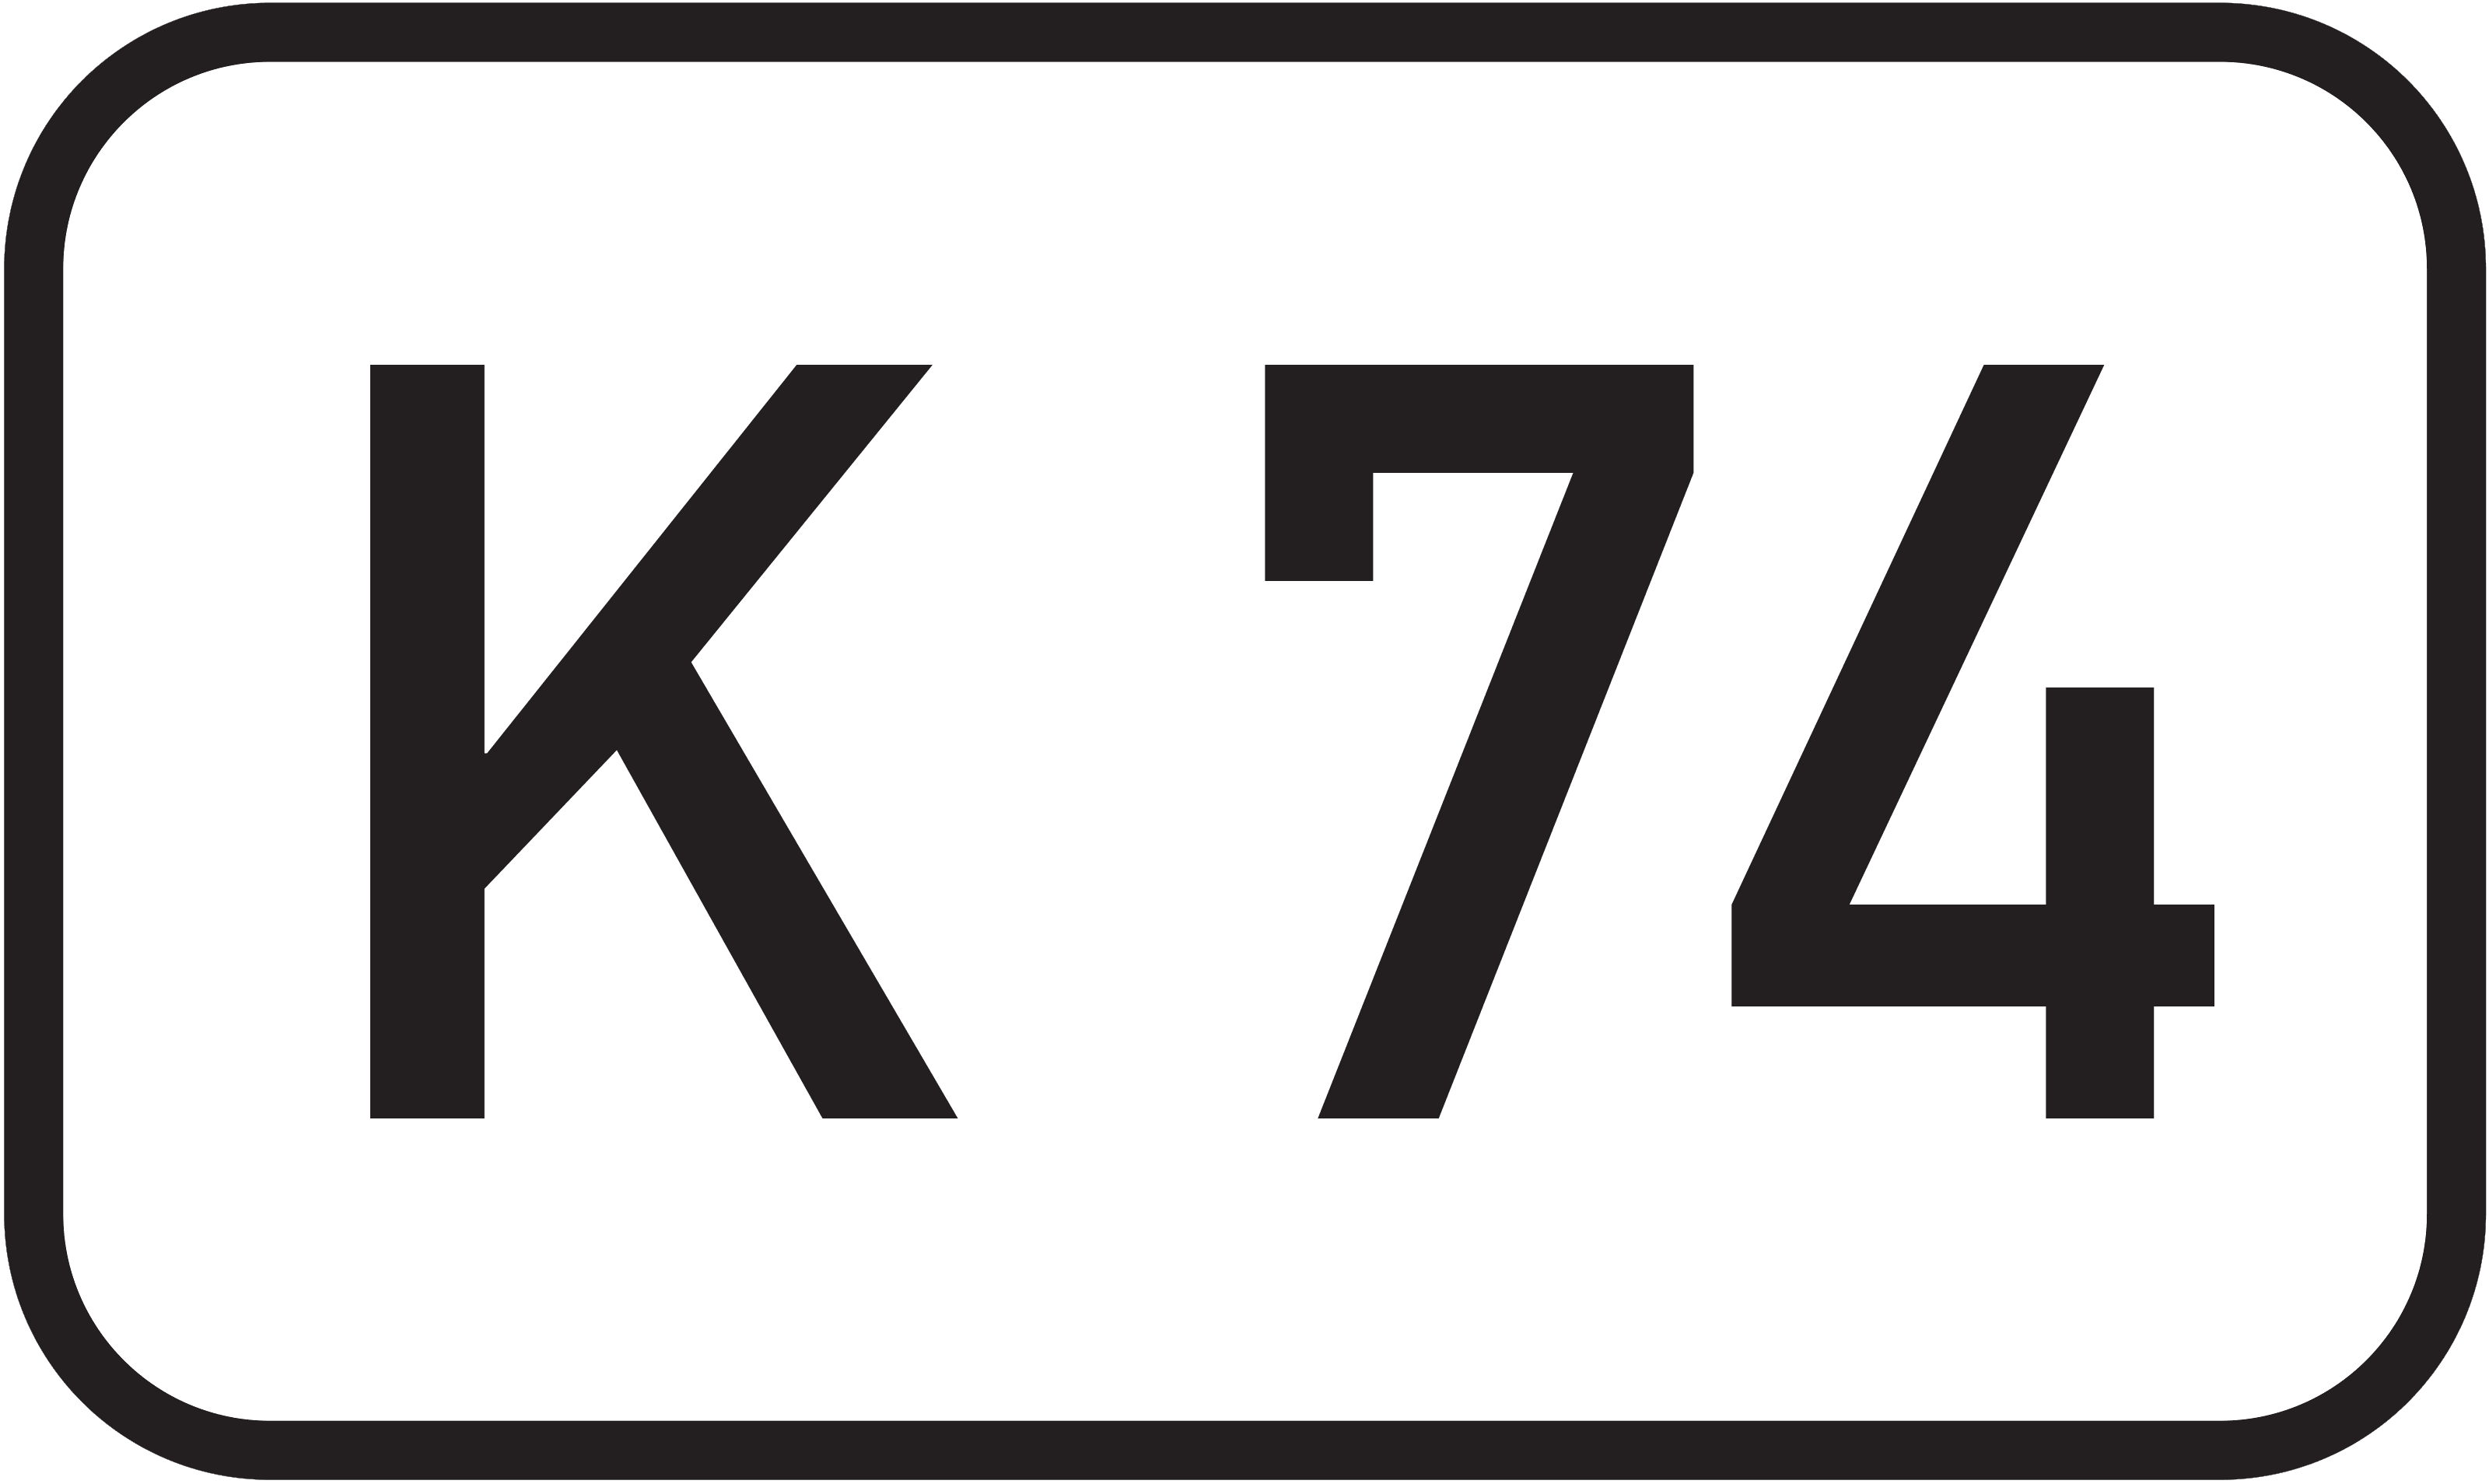 Bundesstraße K 74